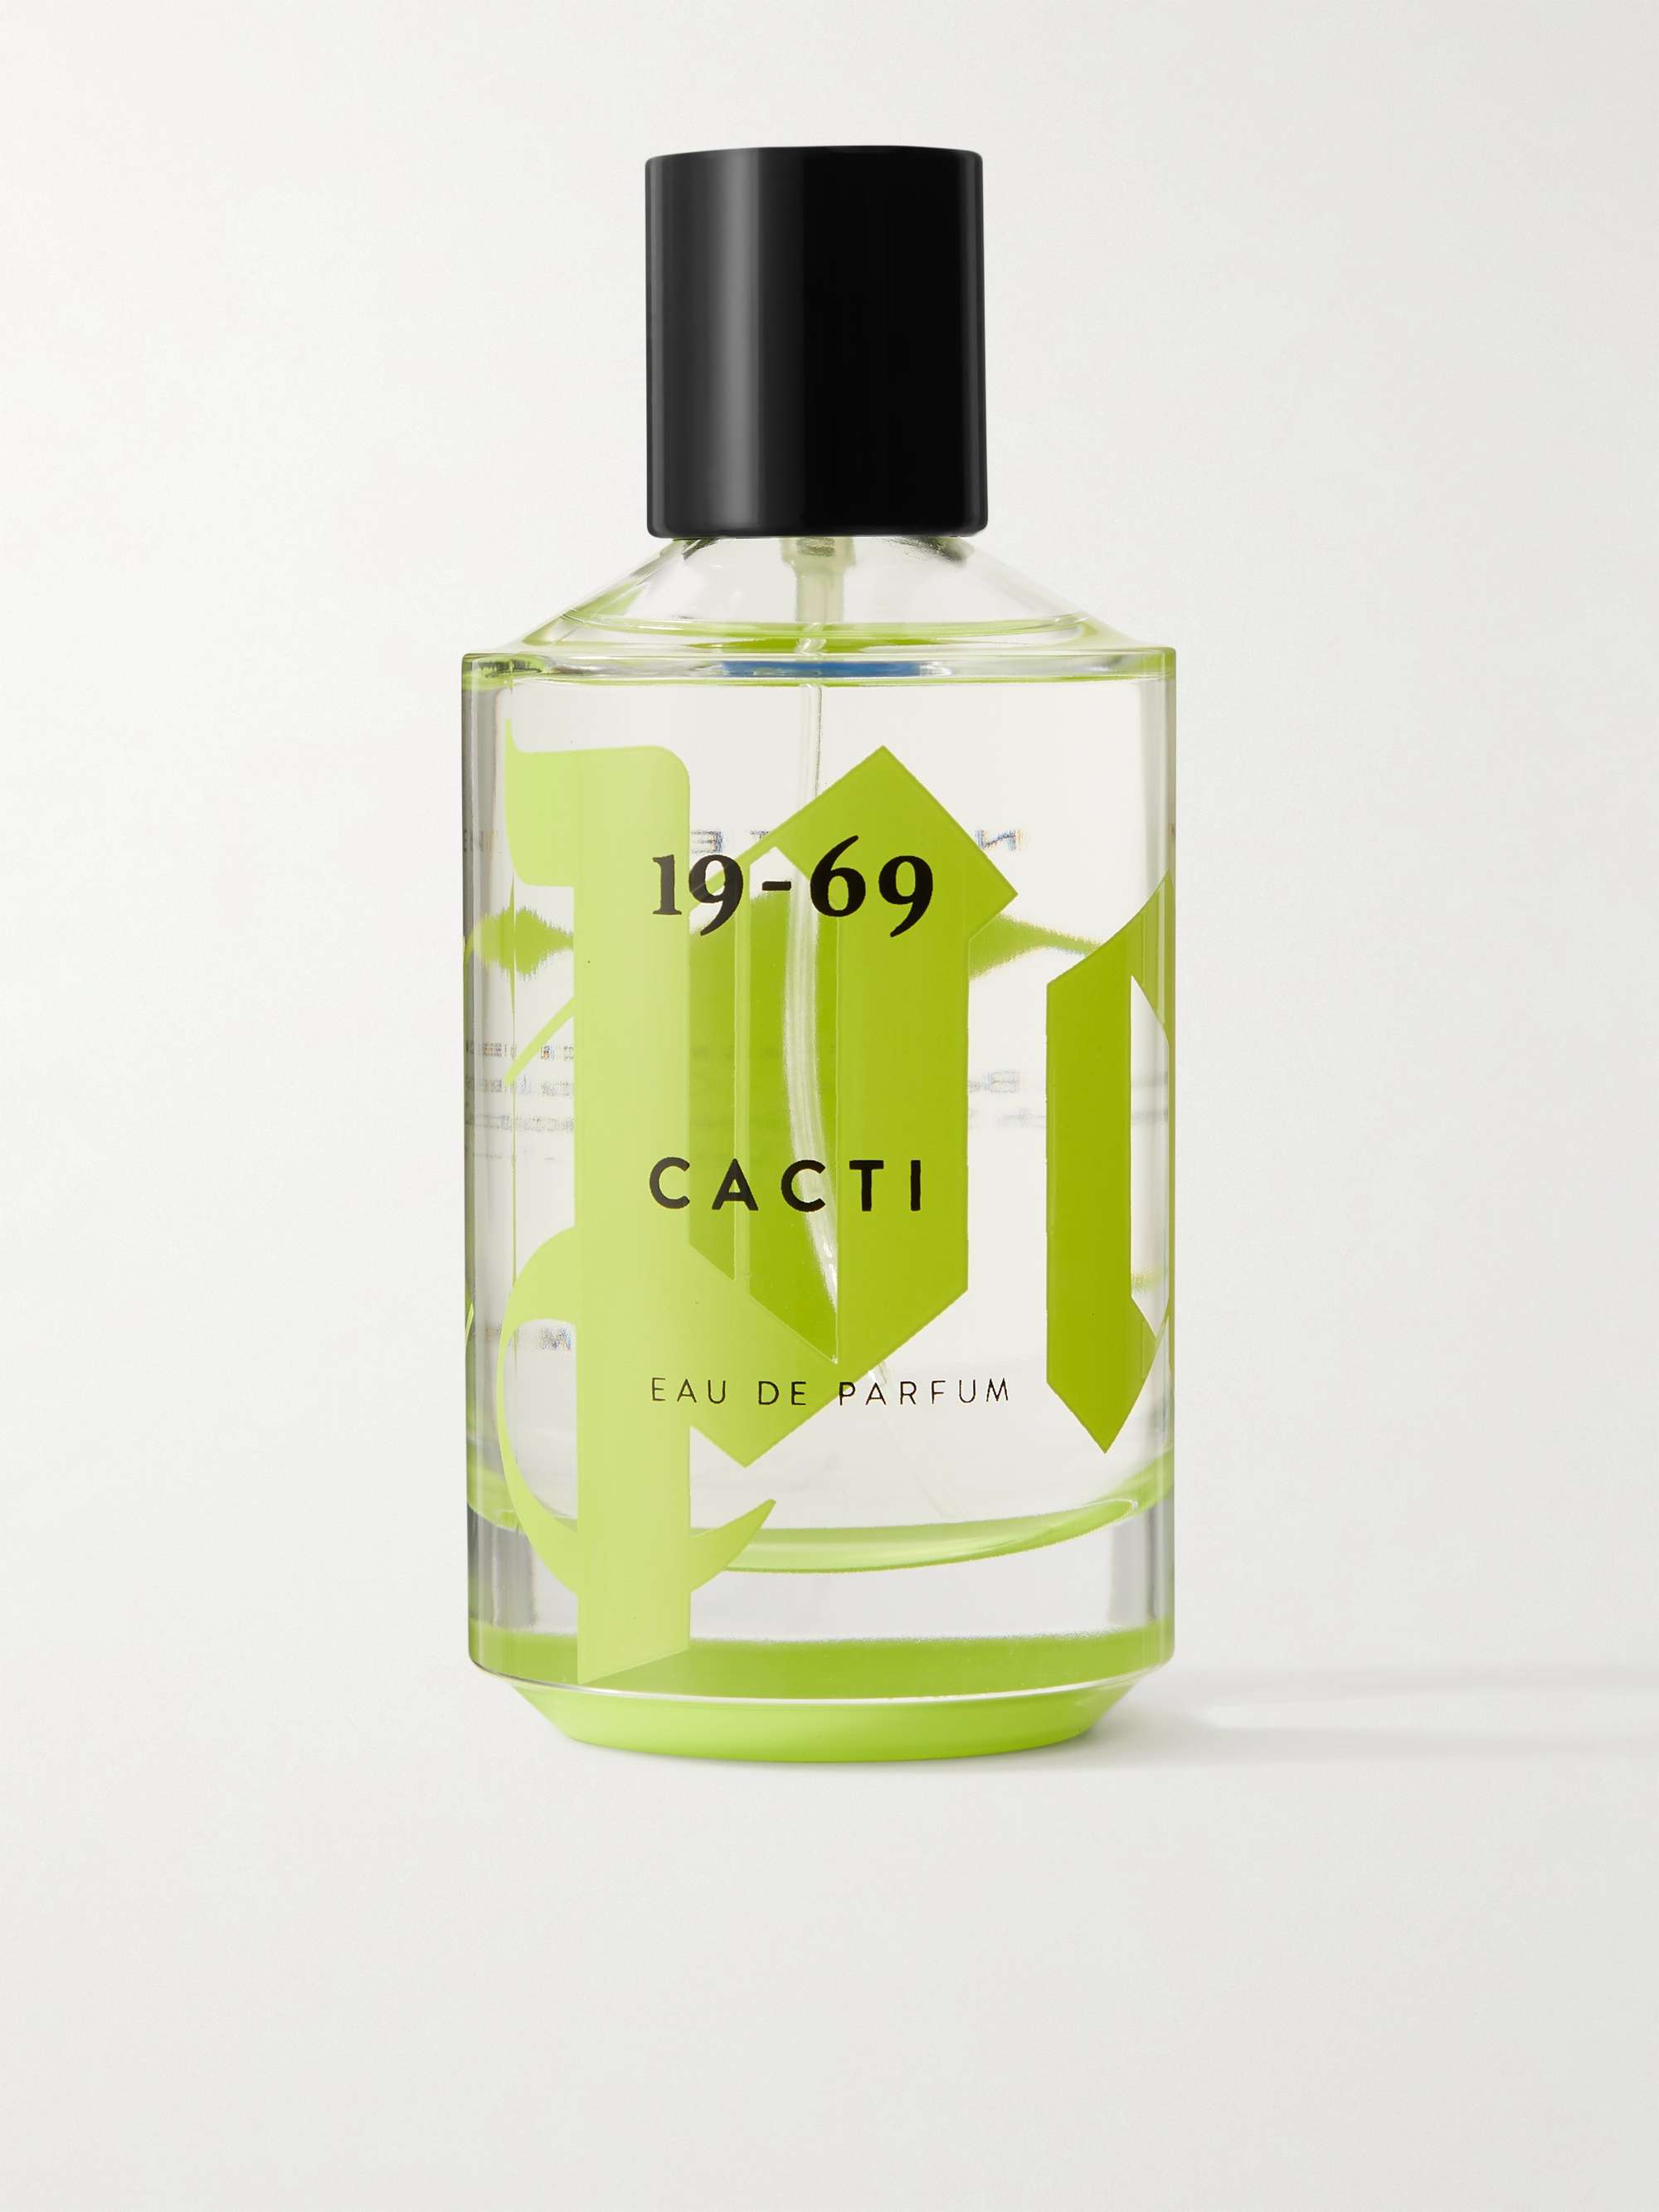 19-69 + Palm Angels Limited Edition Cacti Eau de Parfum, 100ml